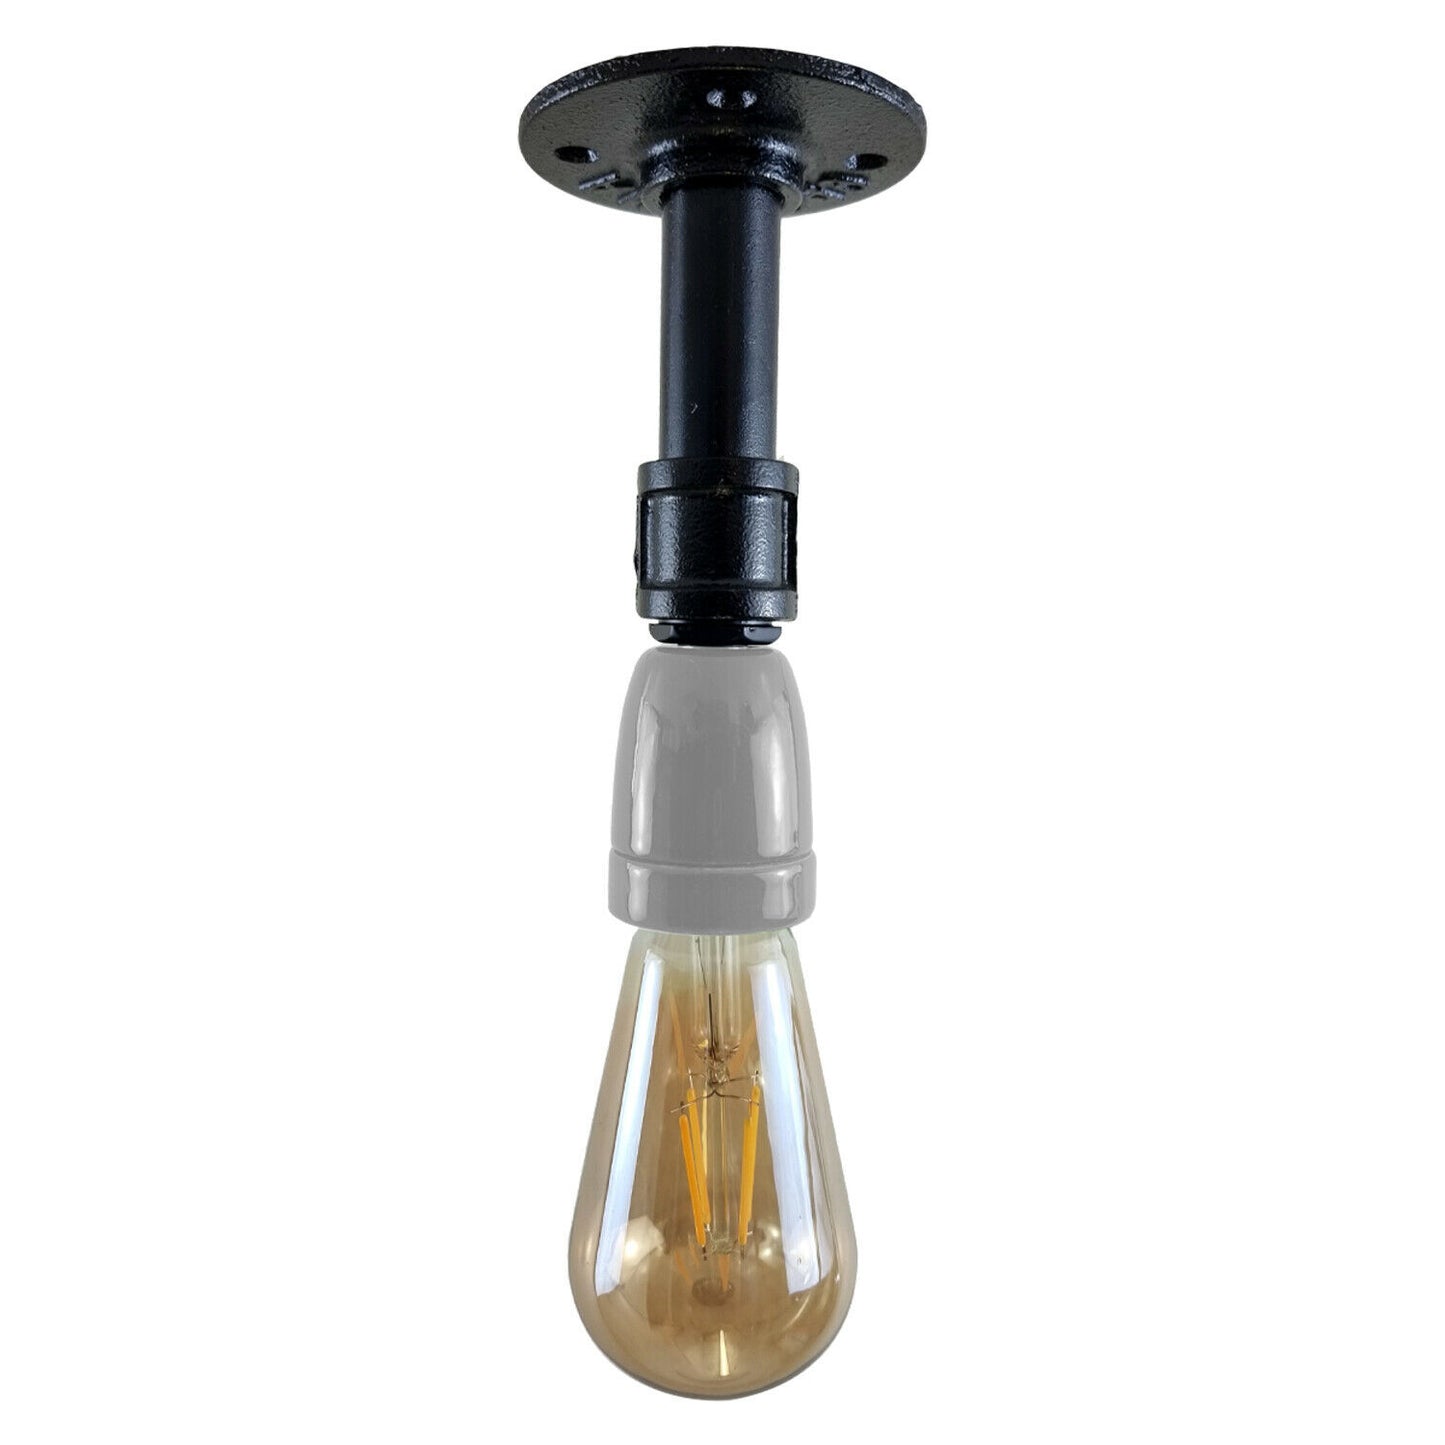 Vintage Industrial E27 Holder White Ceiling Light Fitting Flush Pipe Vintage Lighting~2620